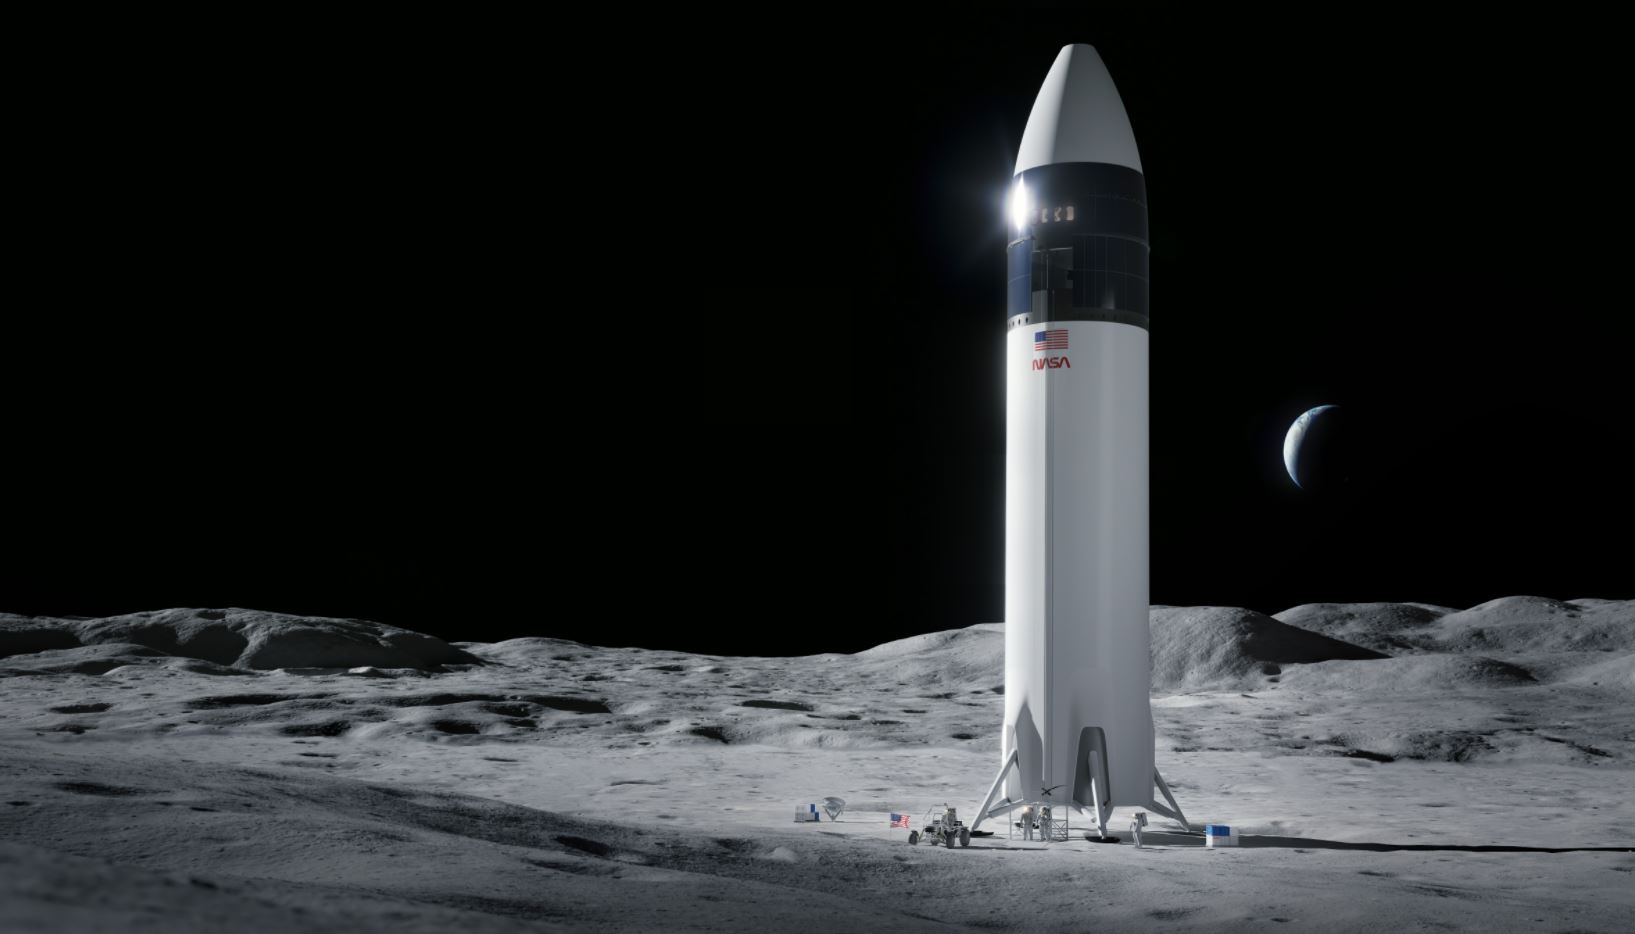 La NASA va mettre SpaceX en concurrence pour amener des astronautes sur la surface lunaire